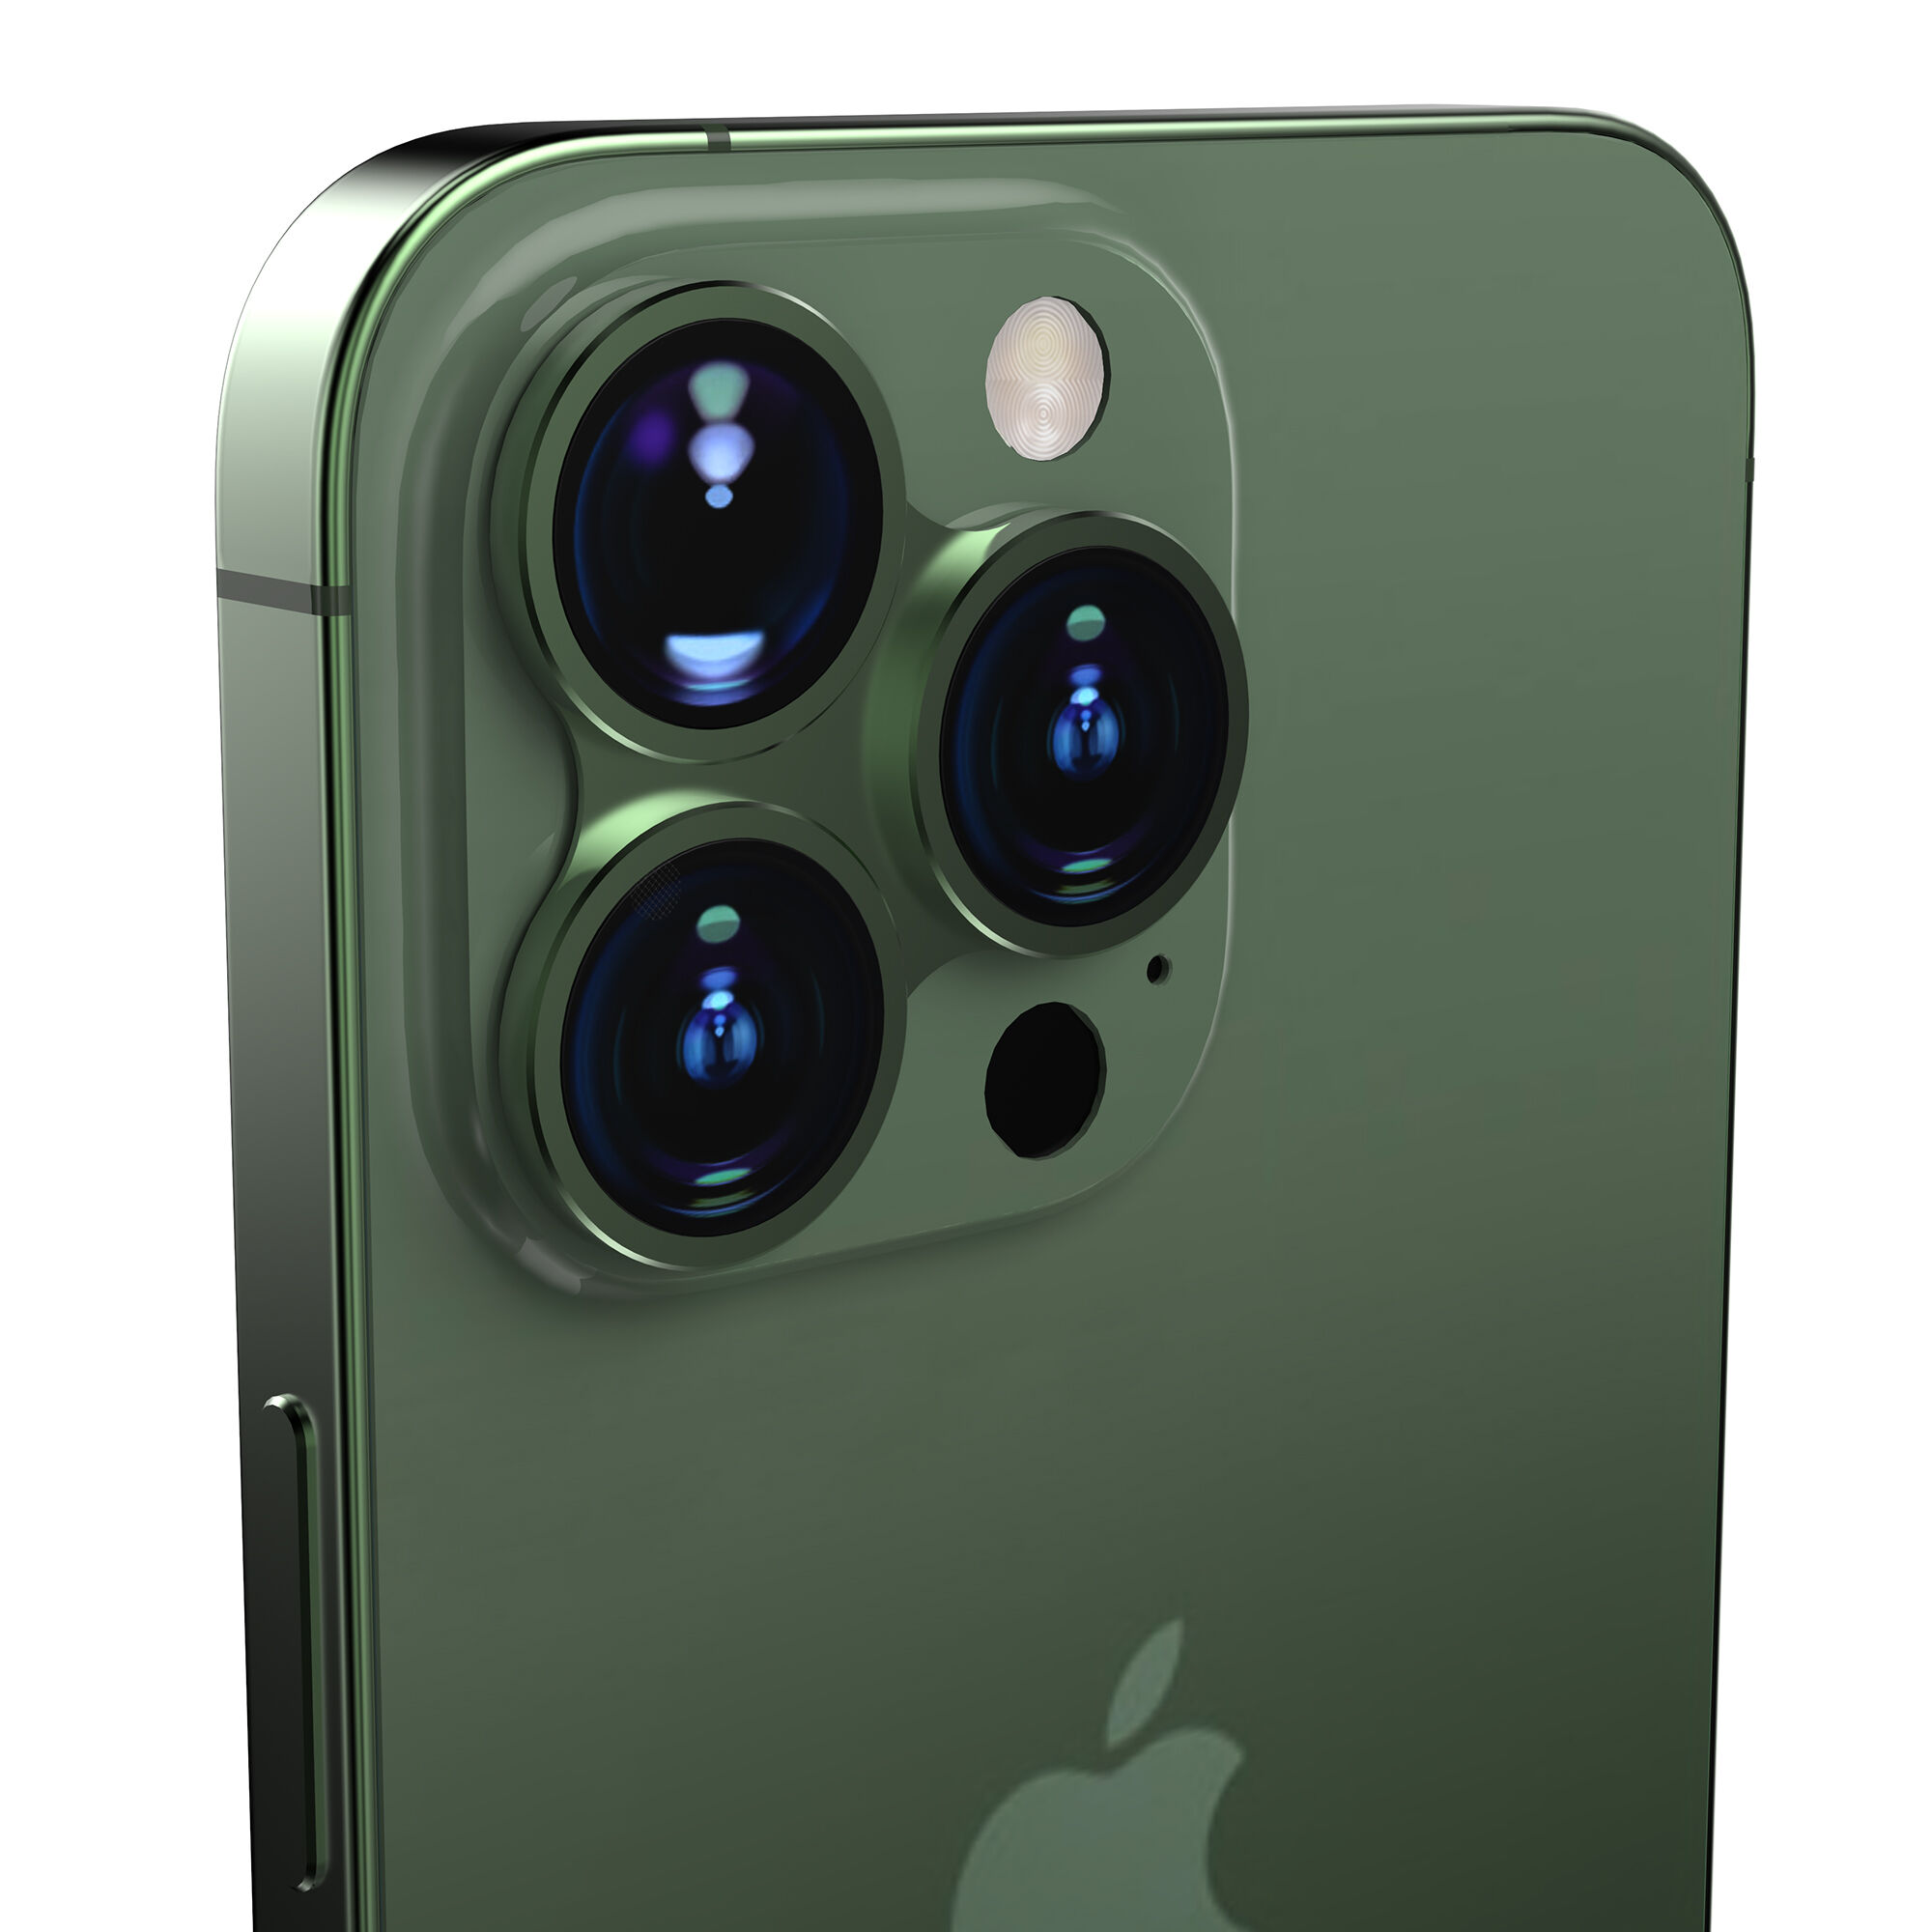 スマートフォンレンズプロテクター for iPhone 13 Pro/13 Pro Max | ケンコー・トキナー